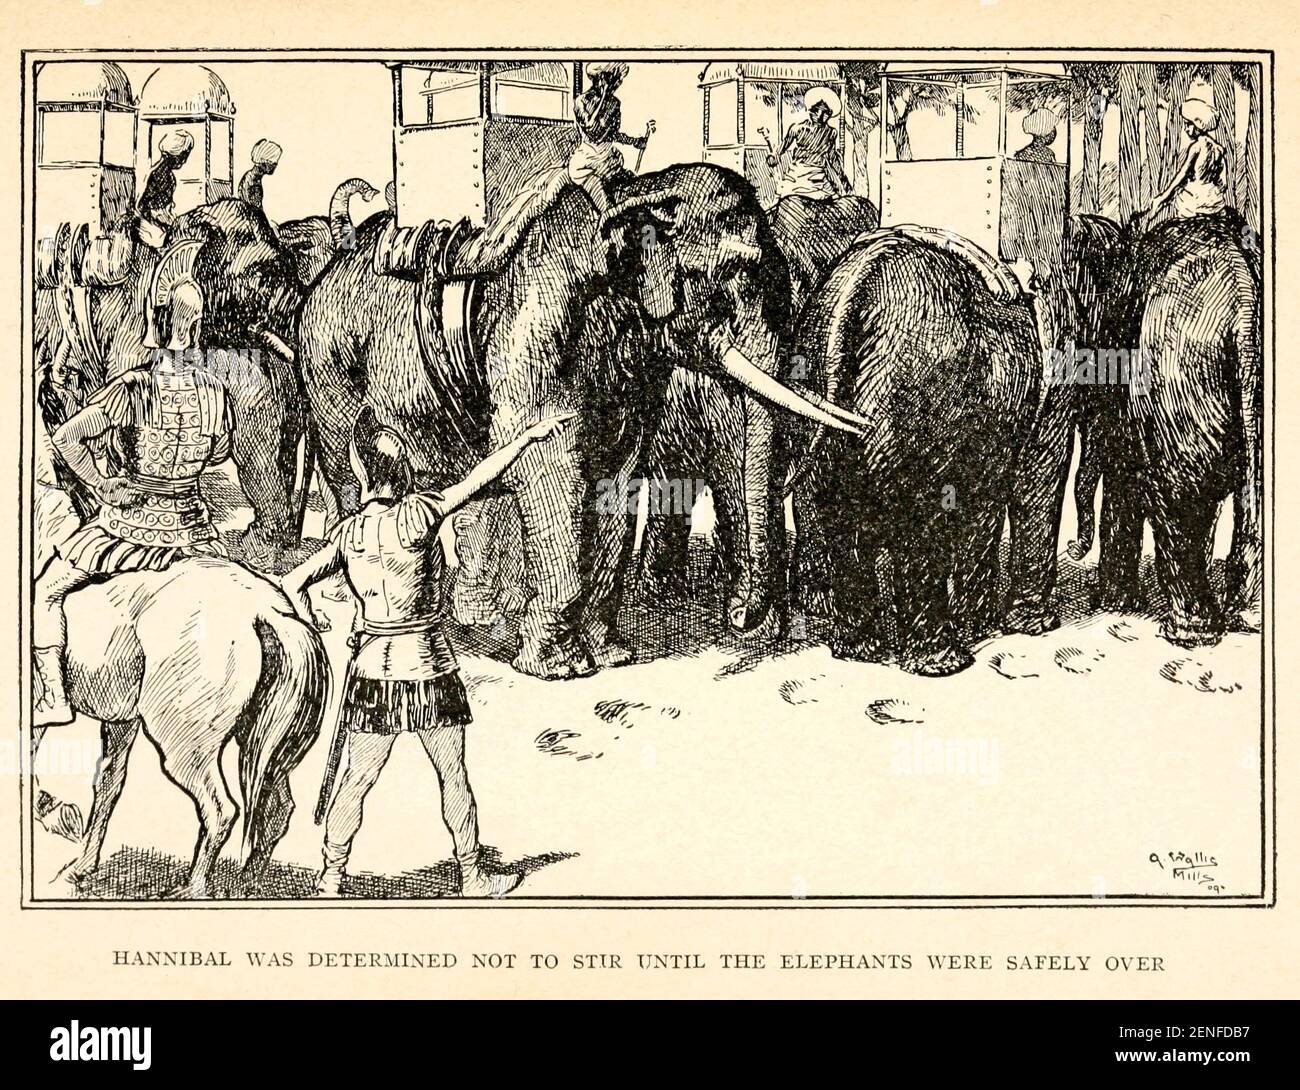 Hannibal a été décidé de ne pas remuer jusqu'à ce que les éléphants aient été en sécurité sur l'illustration de l'histoire ' Hannibal ' du livre ' le livre rouge des héros ' par Mme Lang, édité par Andrew Lang, illustré par A. Wallis Mills, publié par Longmans, Green, And Co. New York, Londres, Bombay et Calcutta en 1909 Banque D'Images